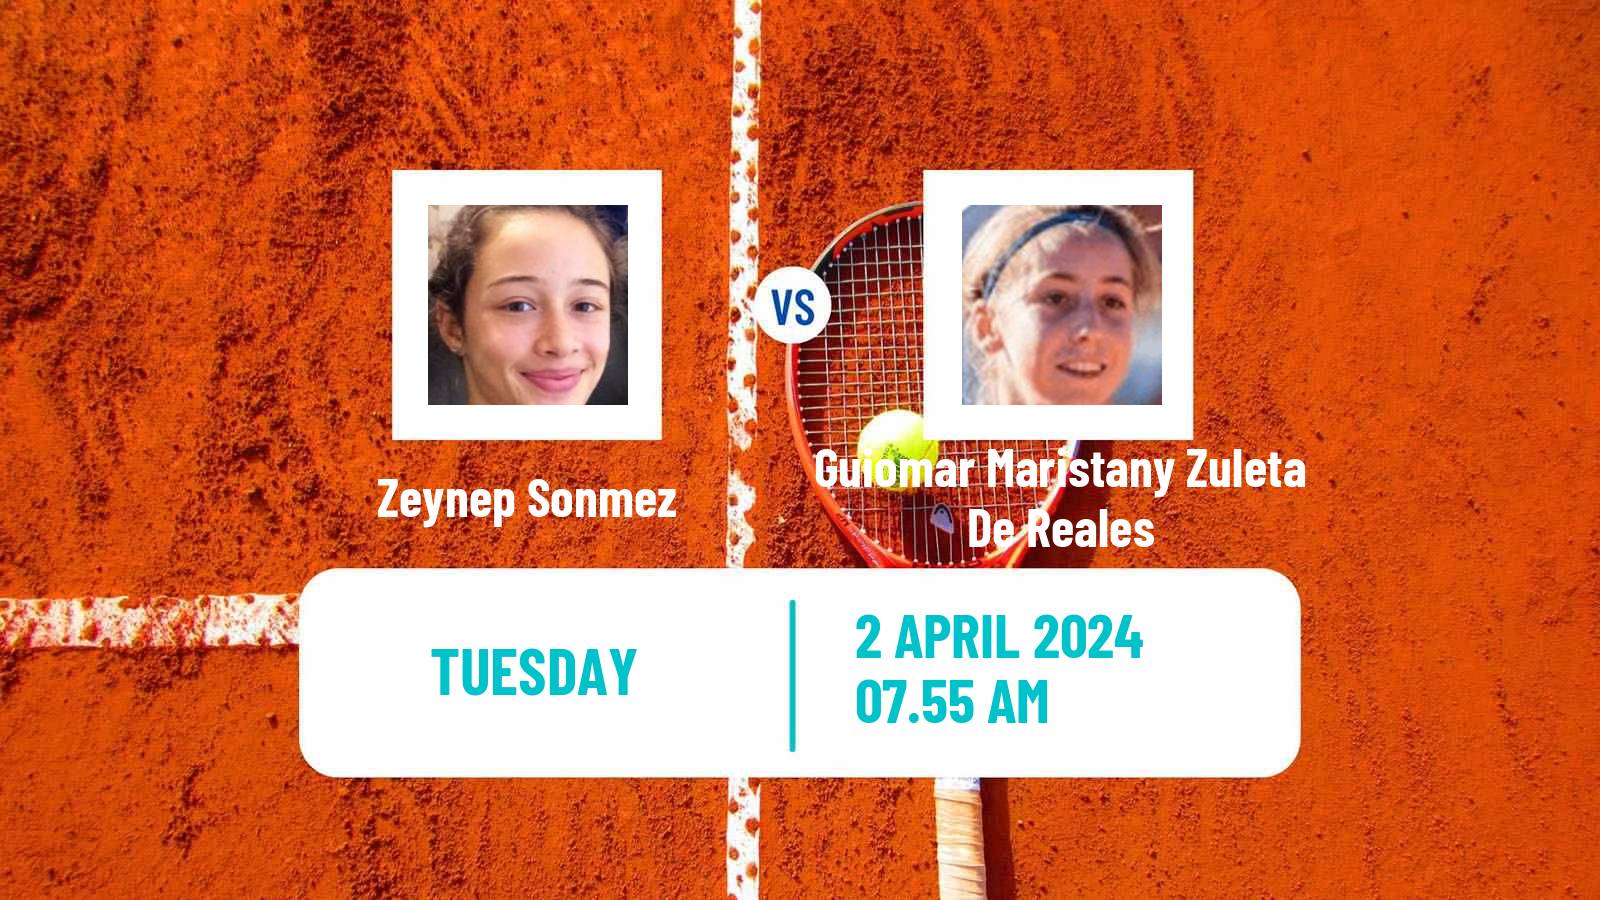 Tennis La Bisbal D Emporda Challenger Women Zeynep Sonmez - Guiomar Maristany Zuleta De Reales